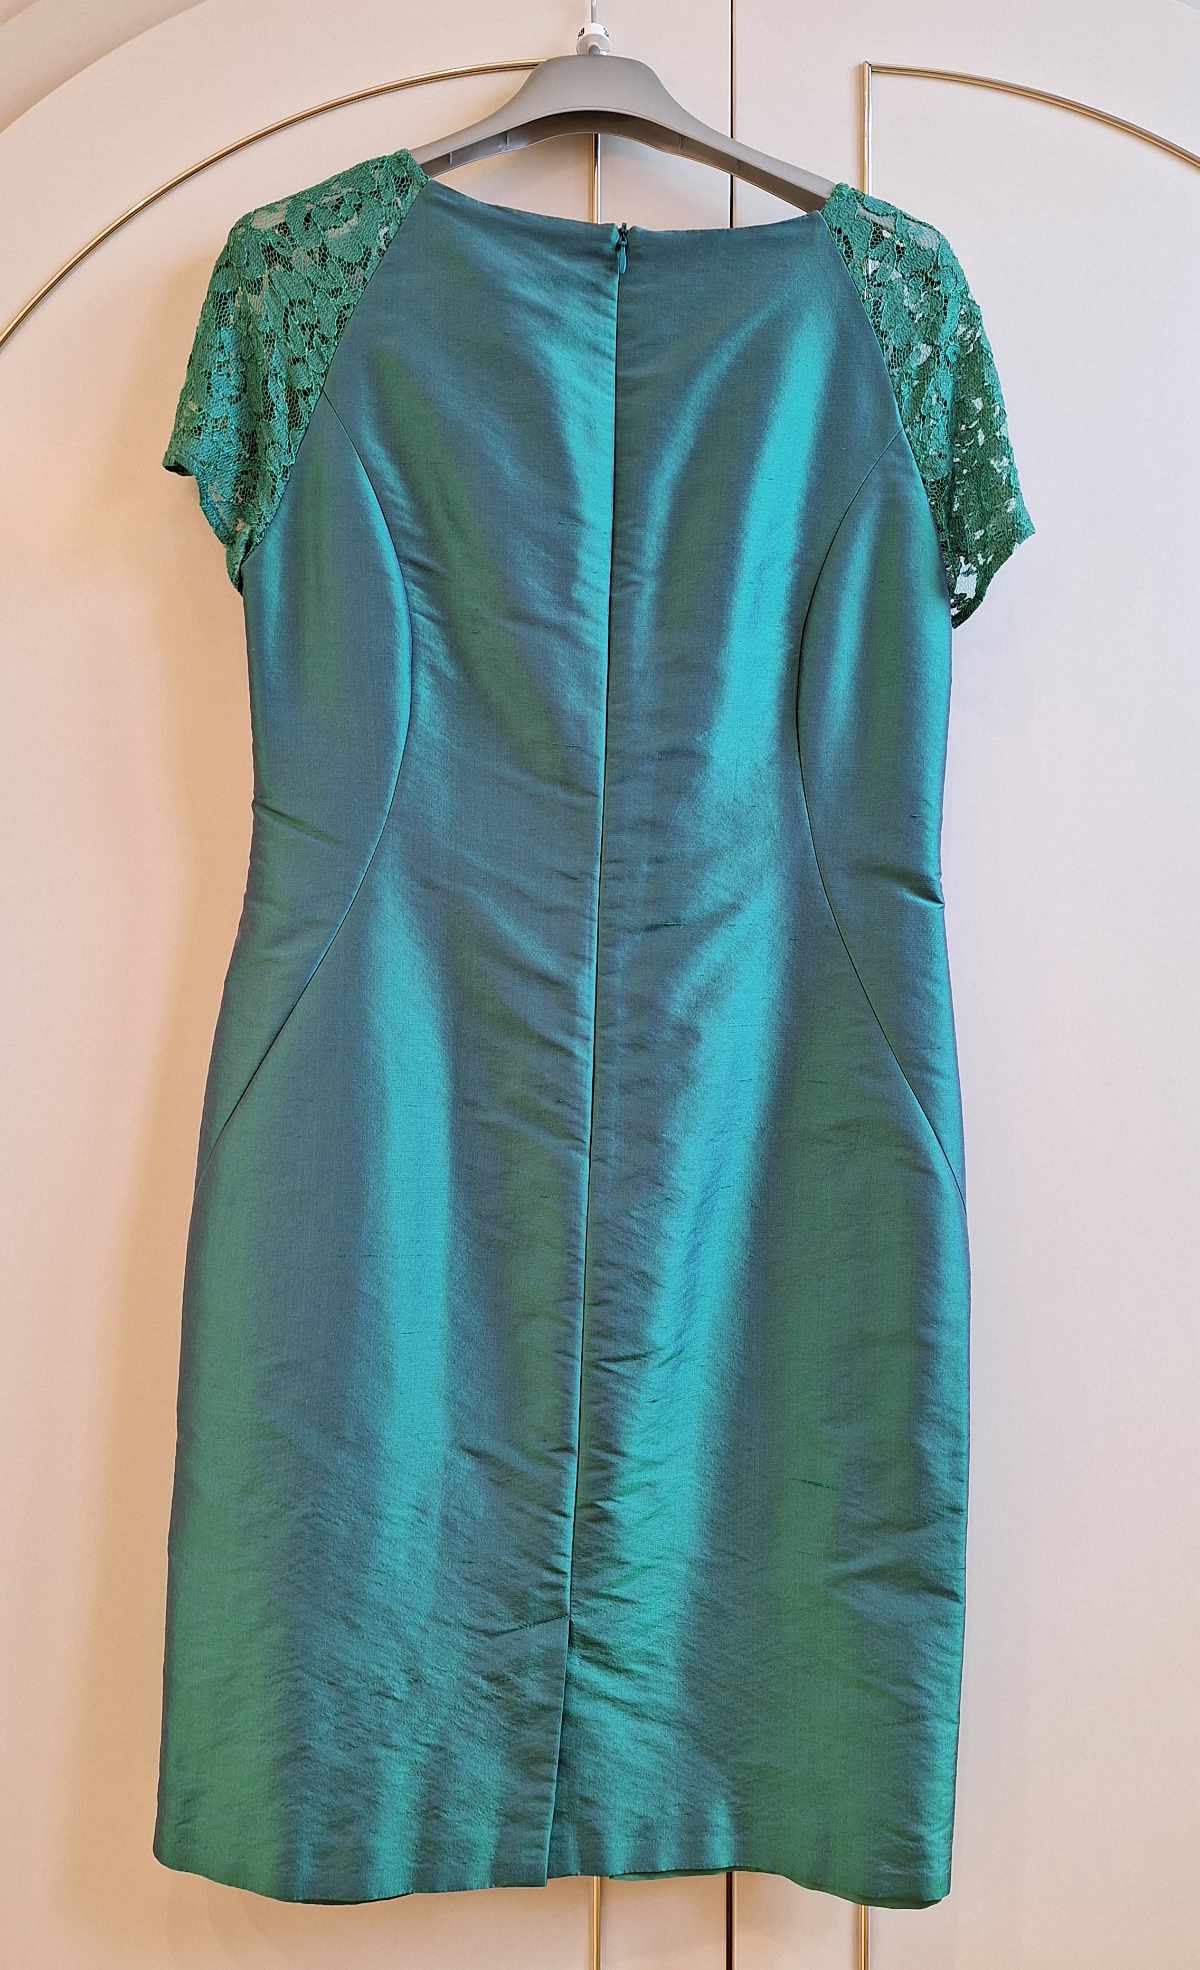 Patrizia Dini Kleid, in grün, Größe 38, aus Seide mit Spitzeneinsatz, von hinten.